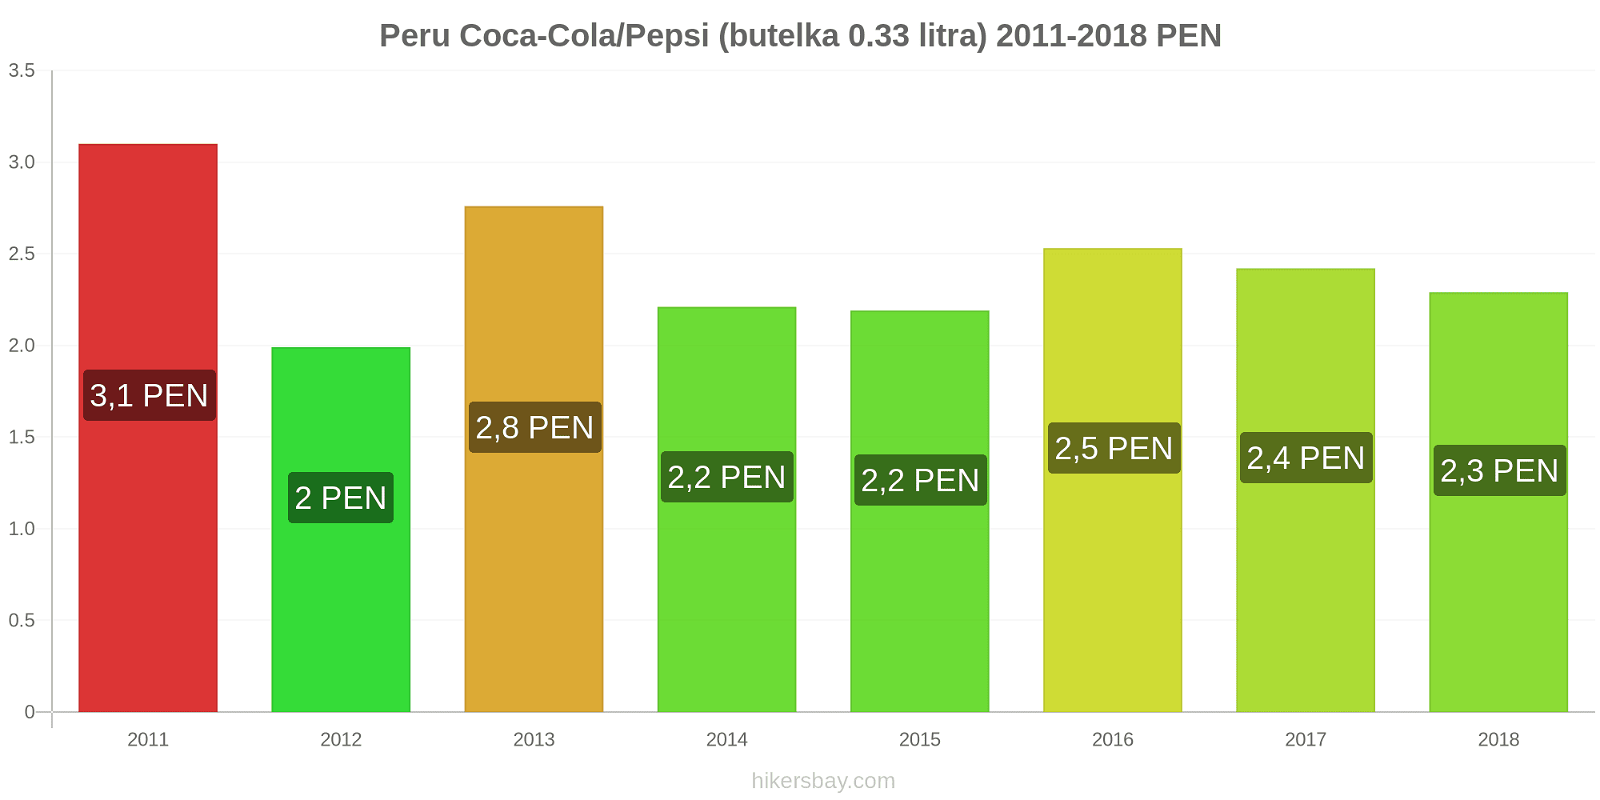 Peru zmiany cen Coca-Cola/Pepsi (butelka 0.33 litra) hikersbay.com